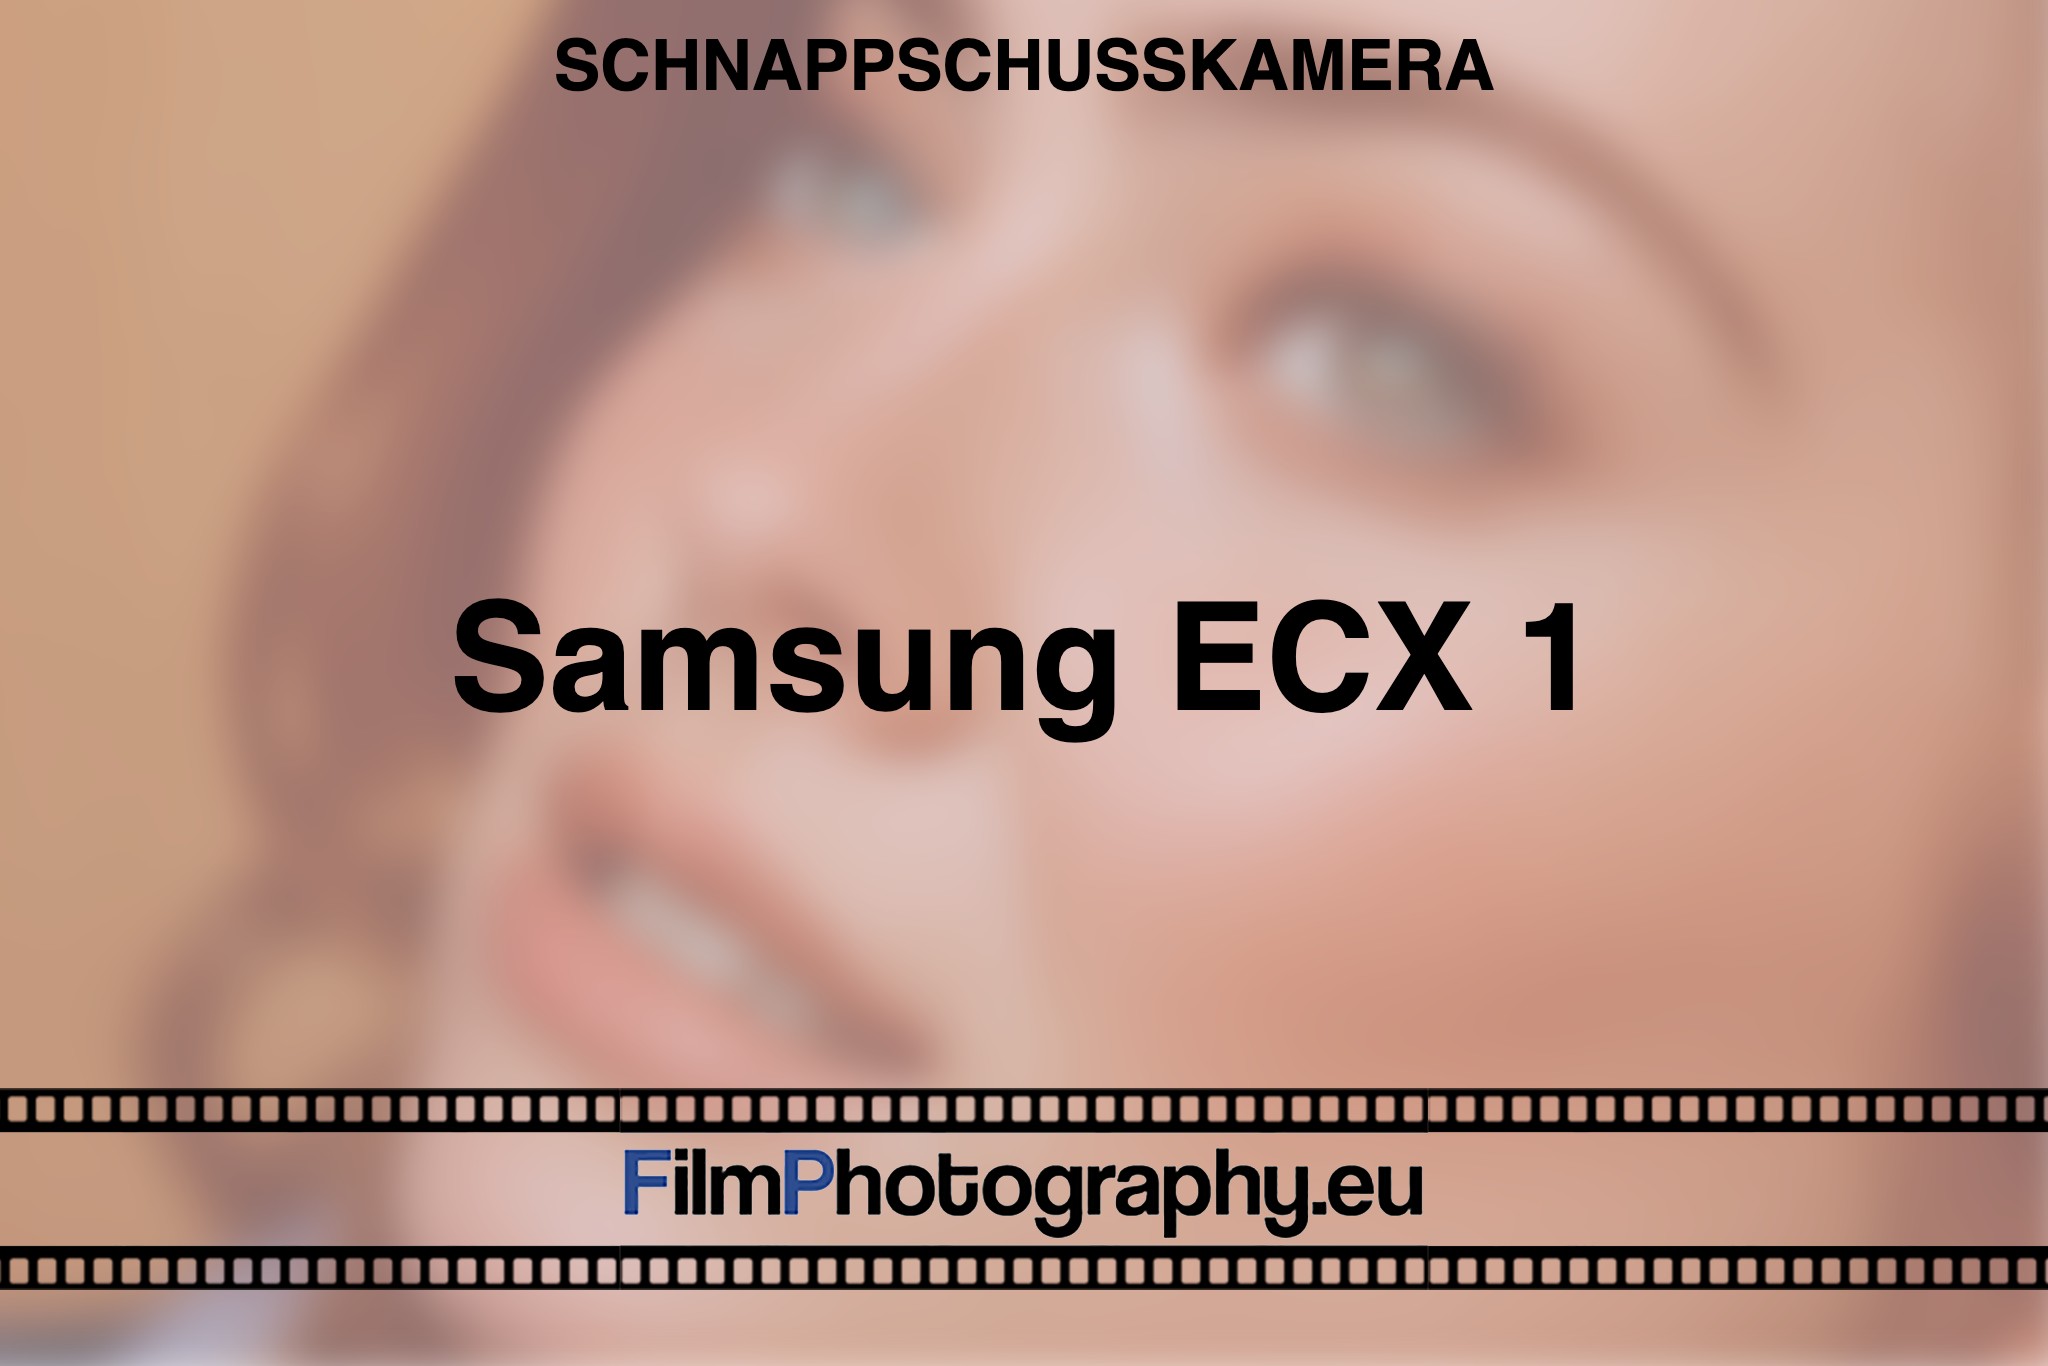 samsung-ecx-1-schnappschusskamera-bnv